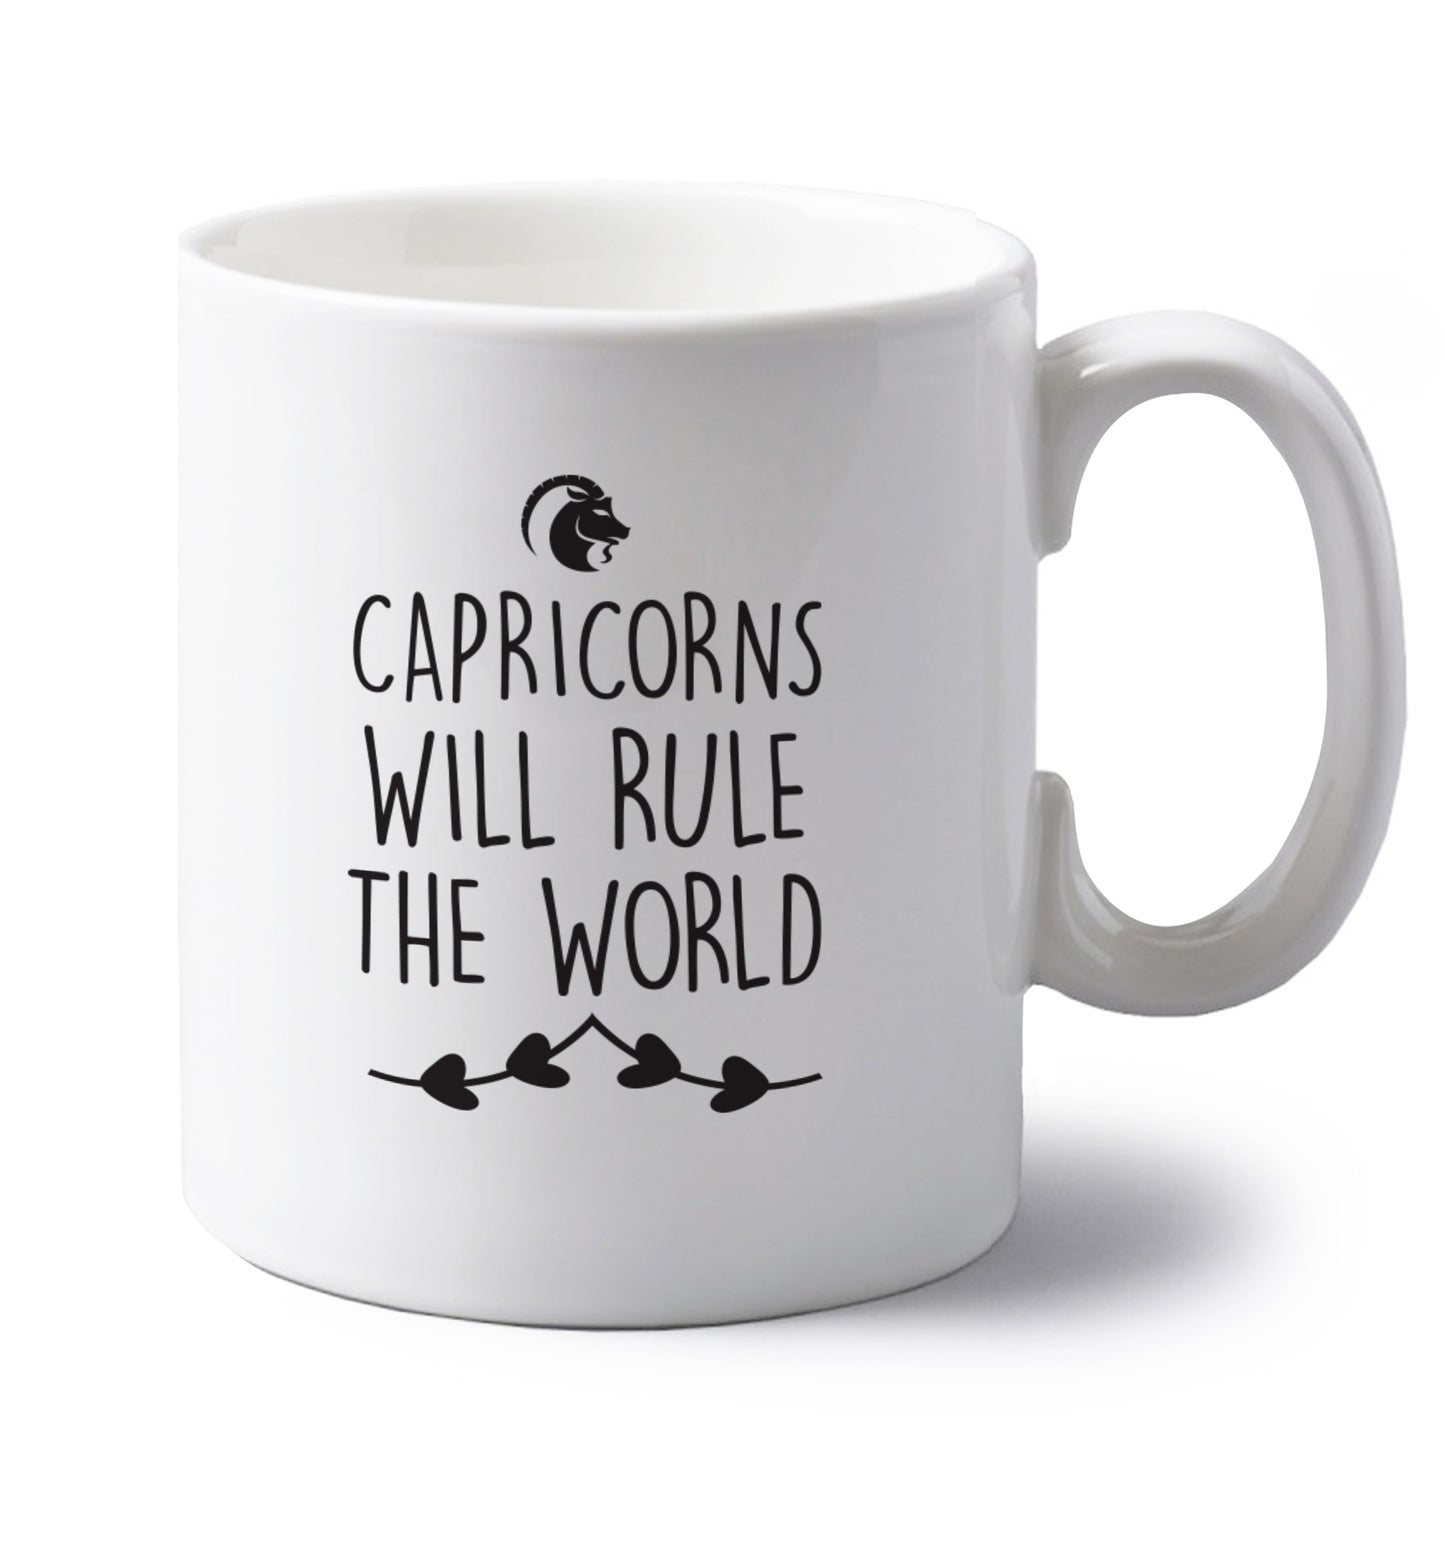 Capricorns will rule the world left handed white ceramic mug 